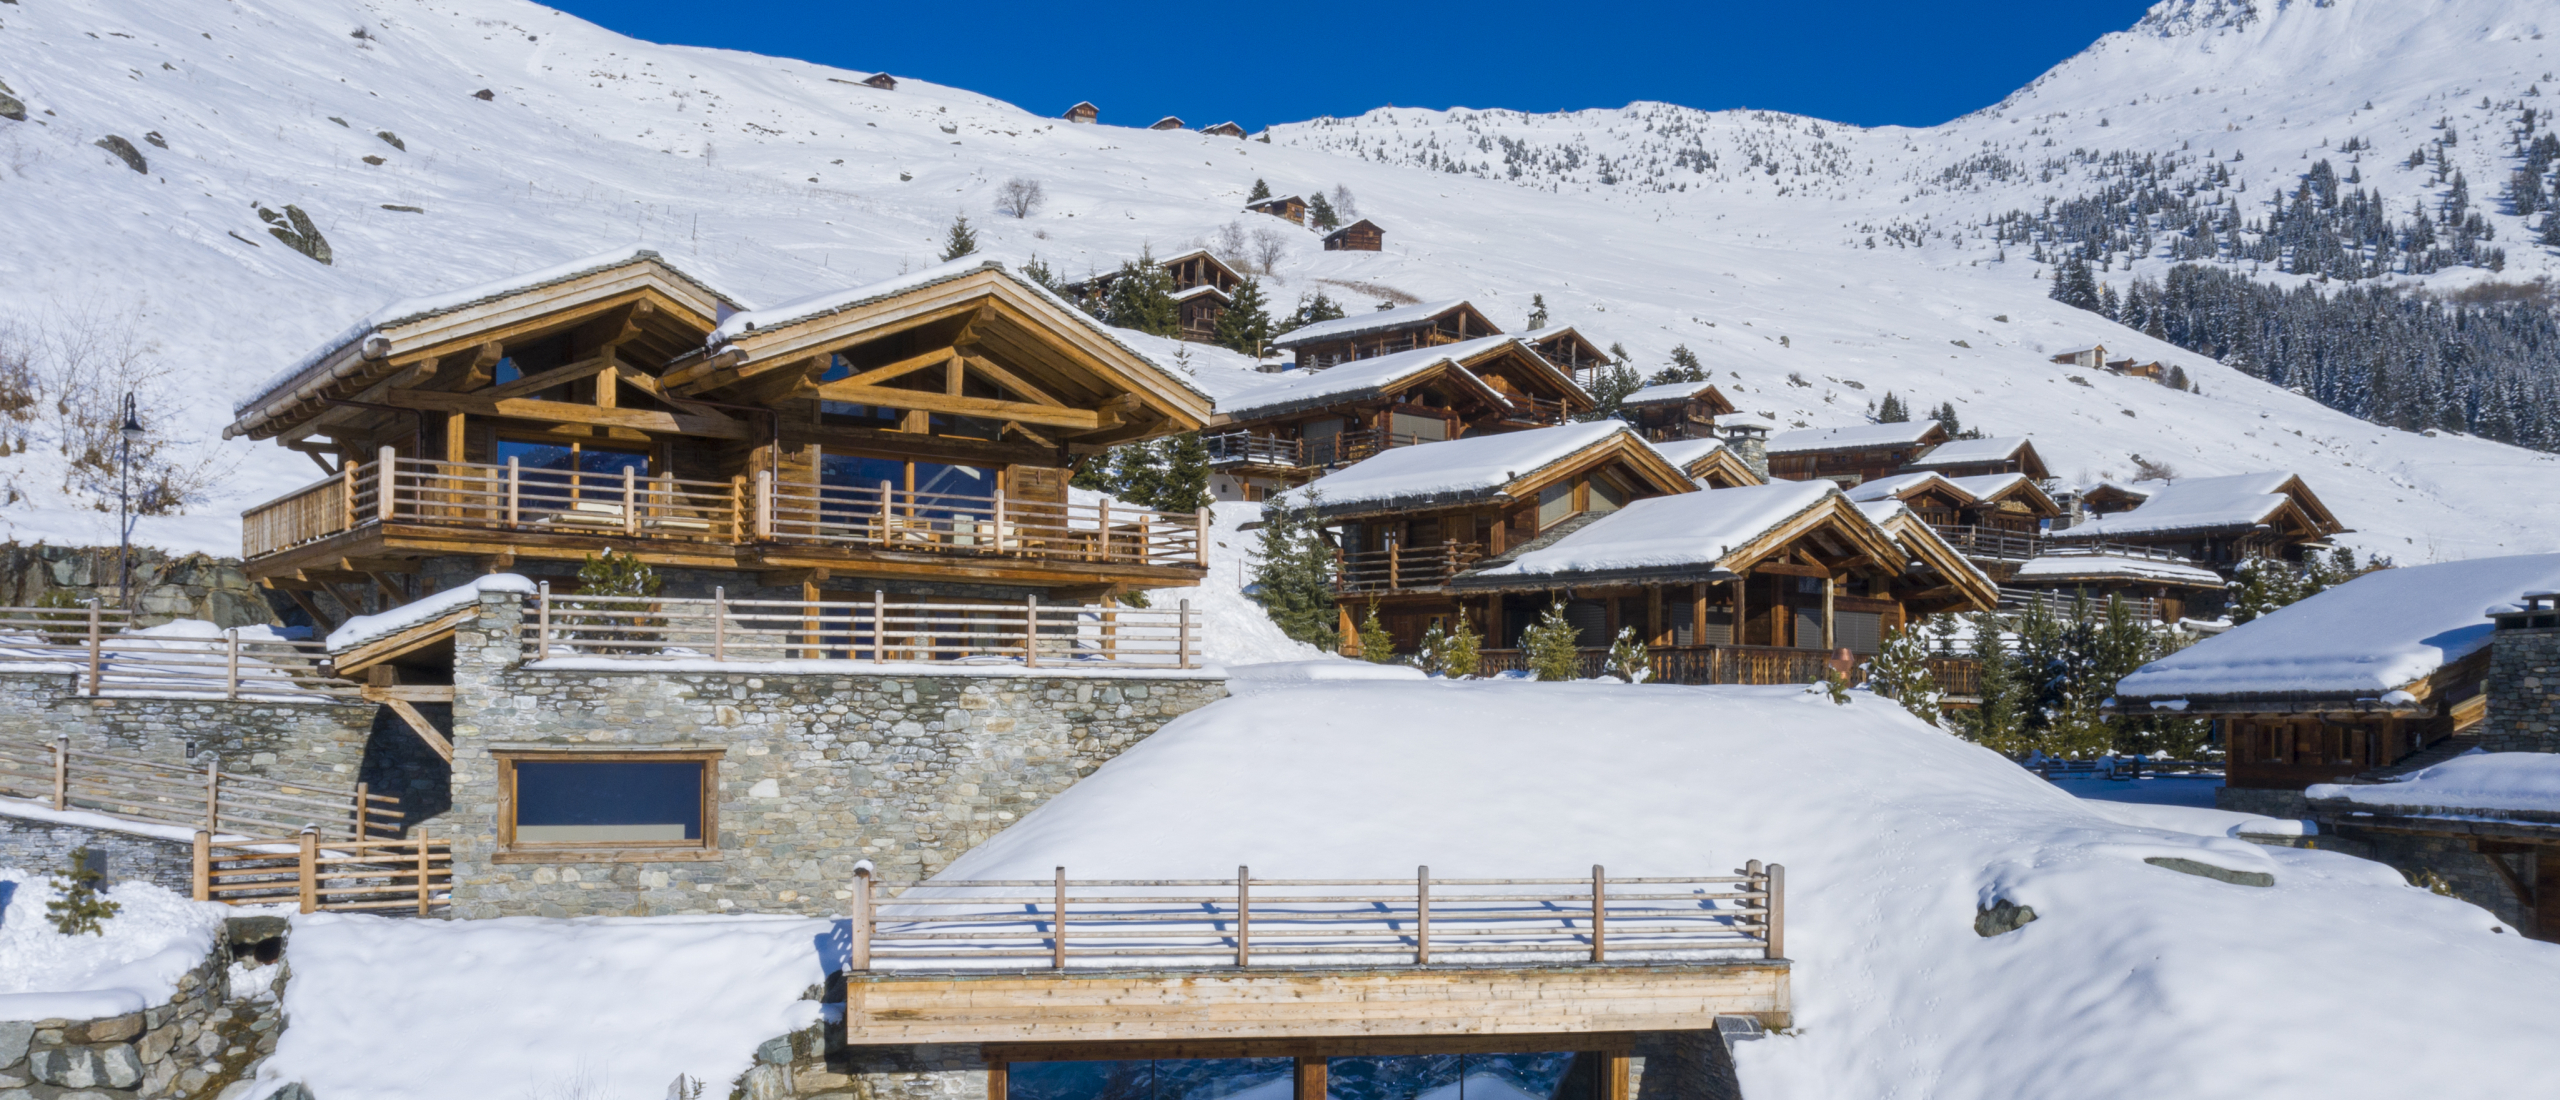 Winter Wonderland in de Alpen: ontdek deze luxe skichalets in Frankrijk, Zwitserland of Oostenrijk